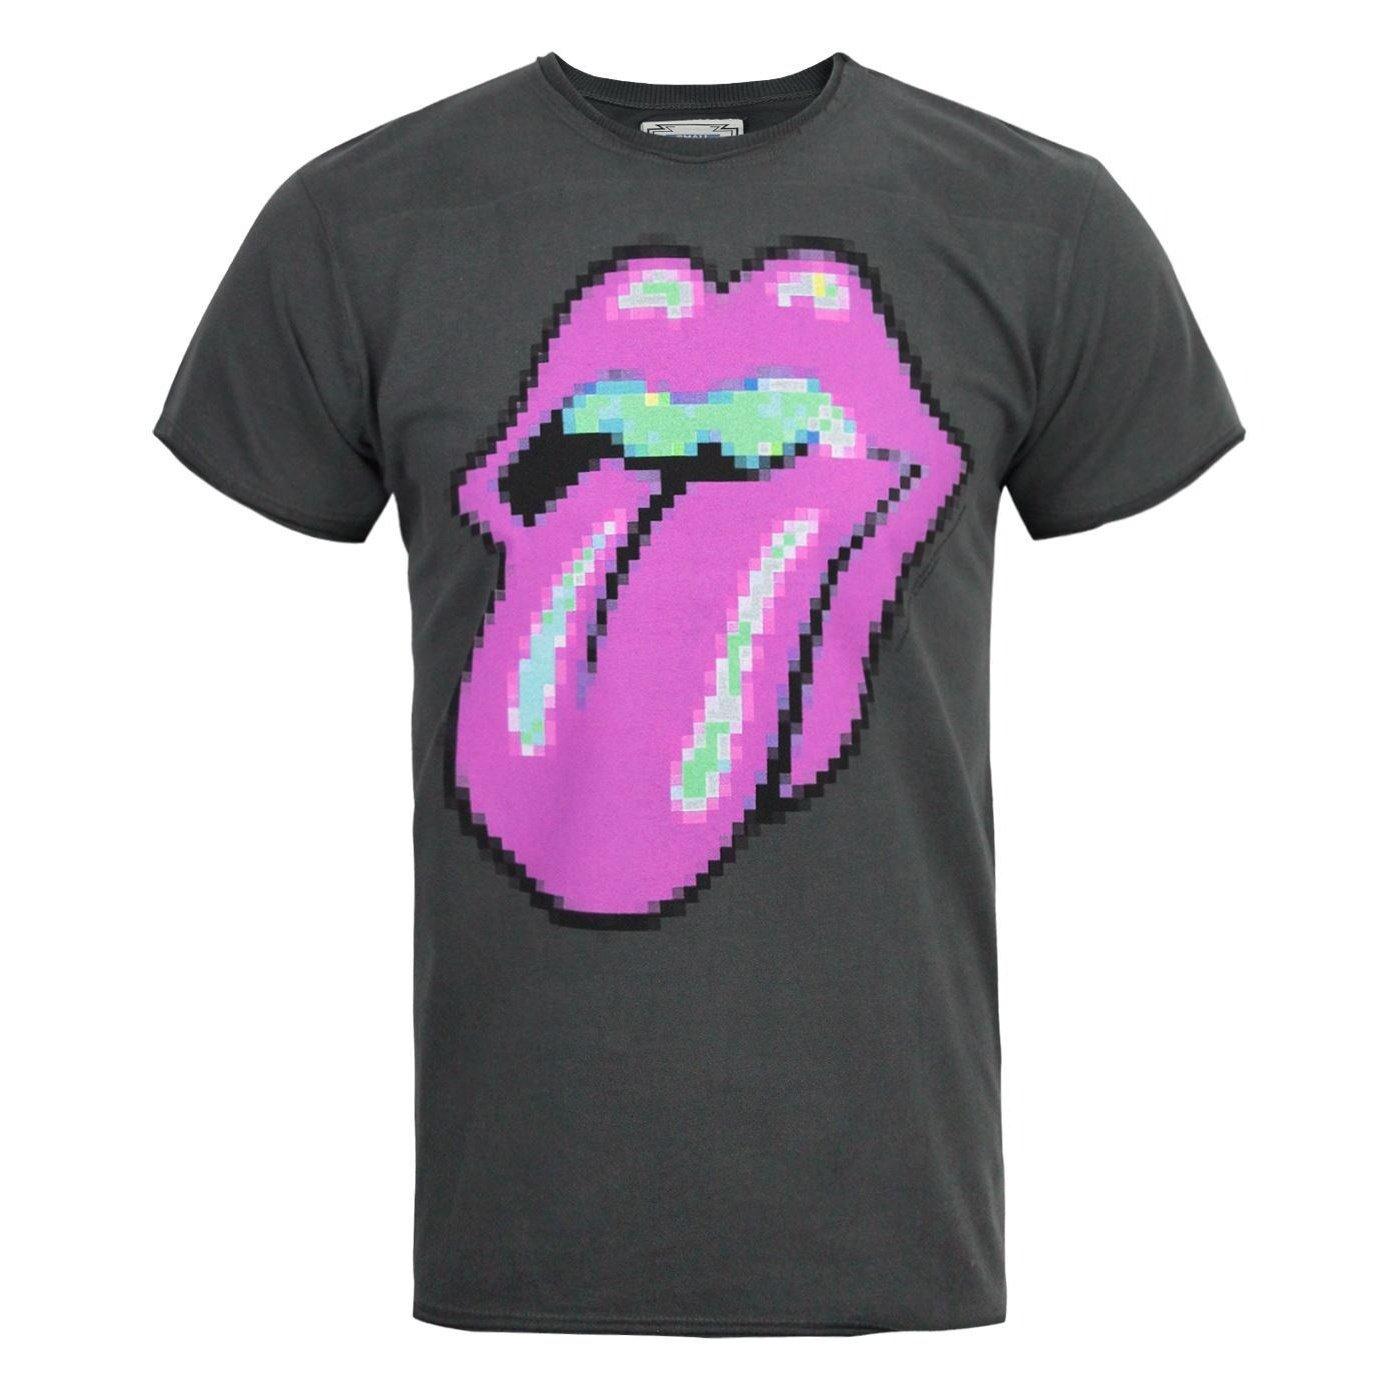 Rolling Stones Tshirt Herren Charcoal Black M von Amplified